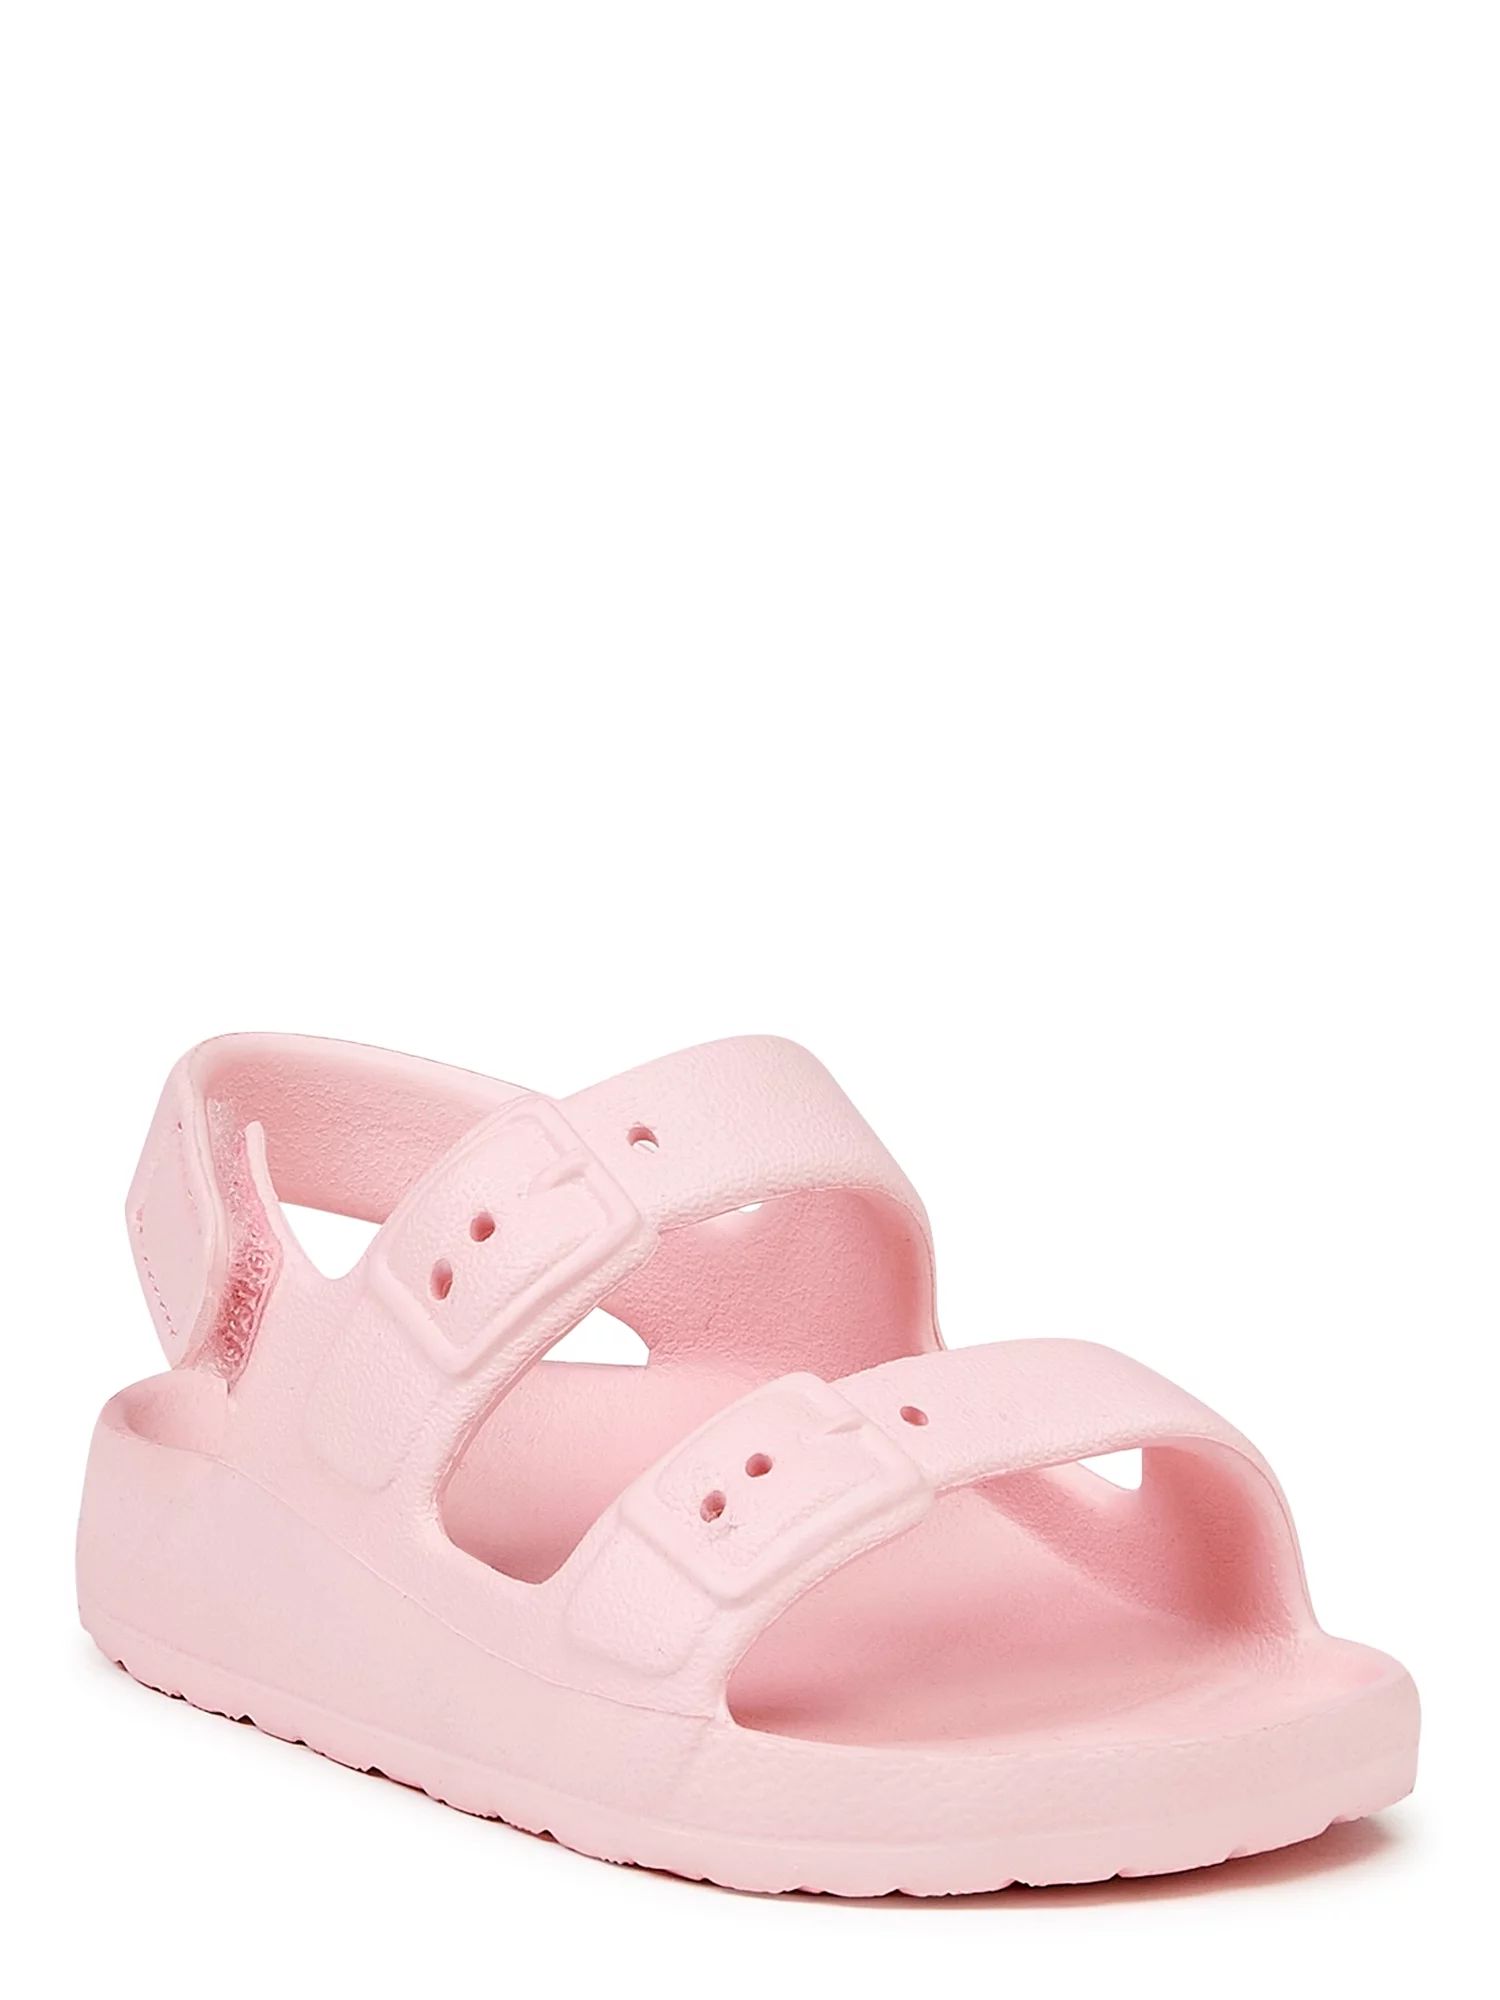 Wonder Nation Baby Girls 2-Buckle Sandals, Sizes 2-6 | Walmart (US)